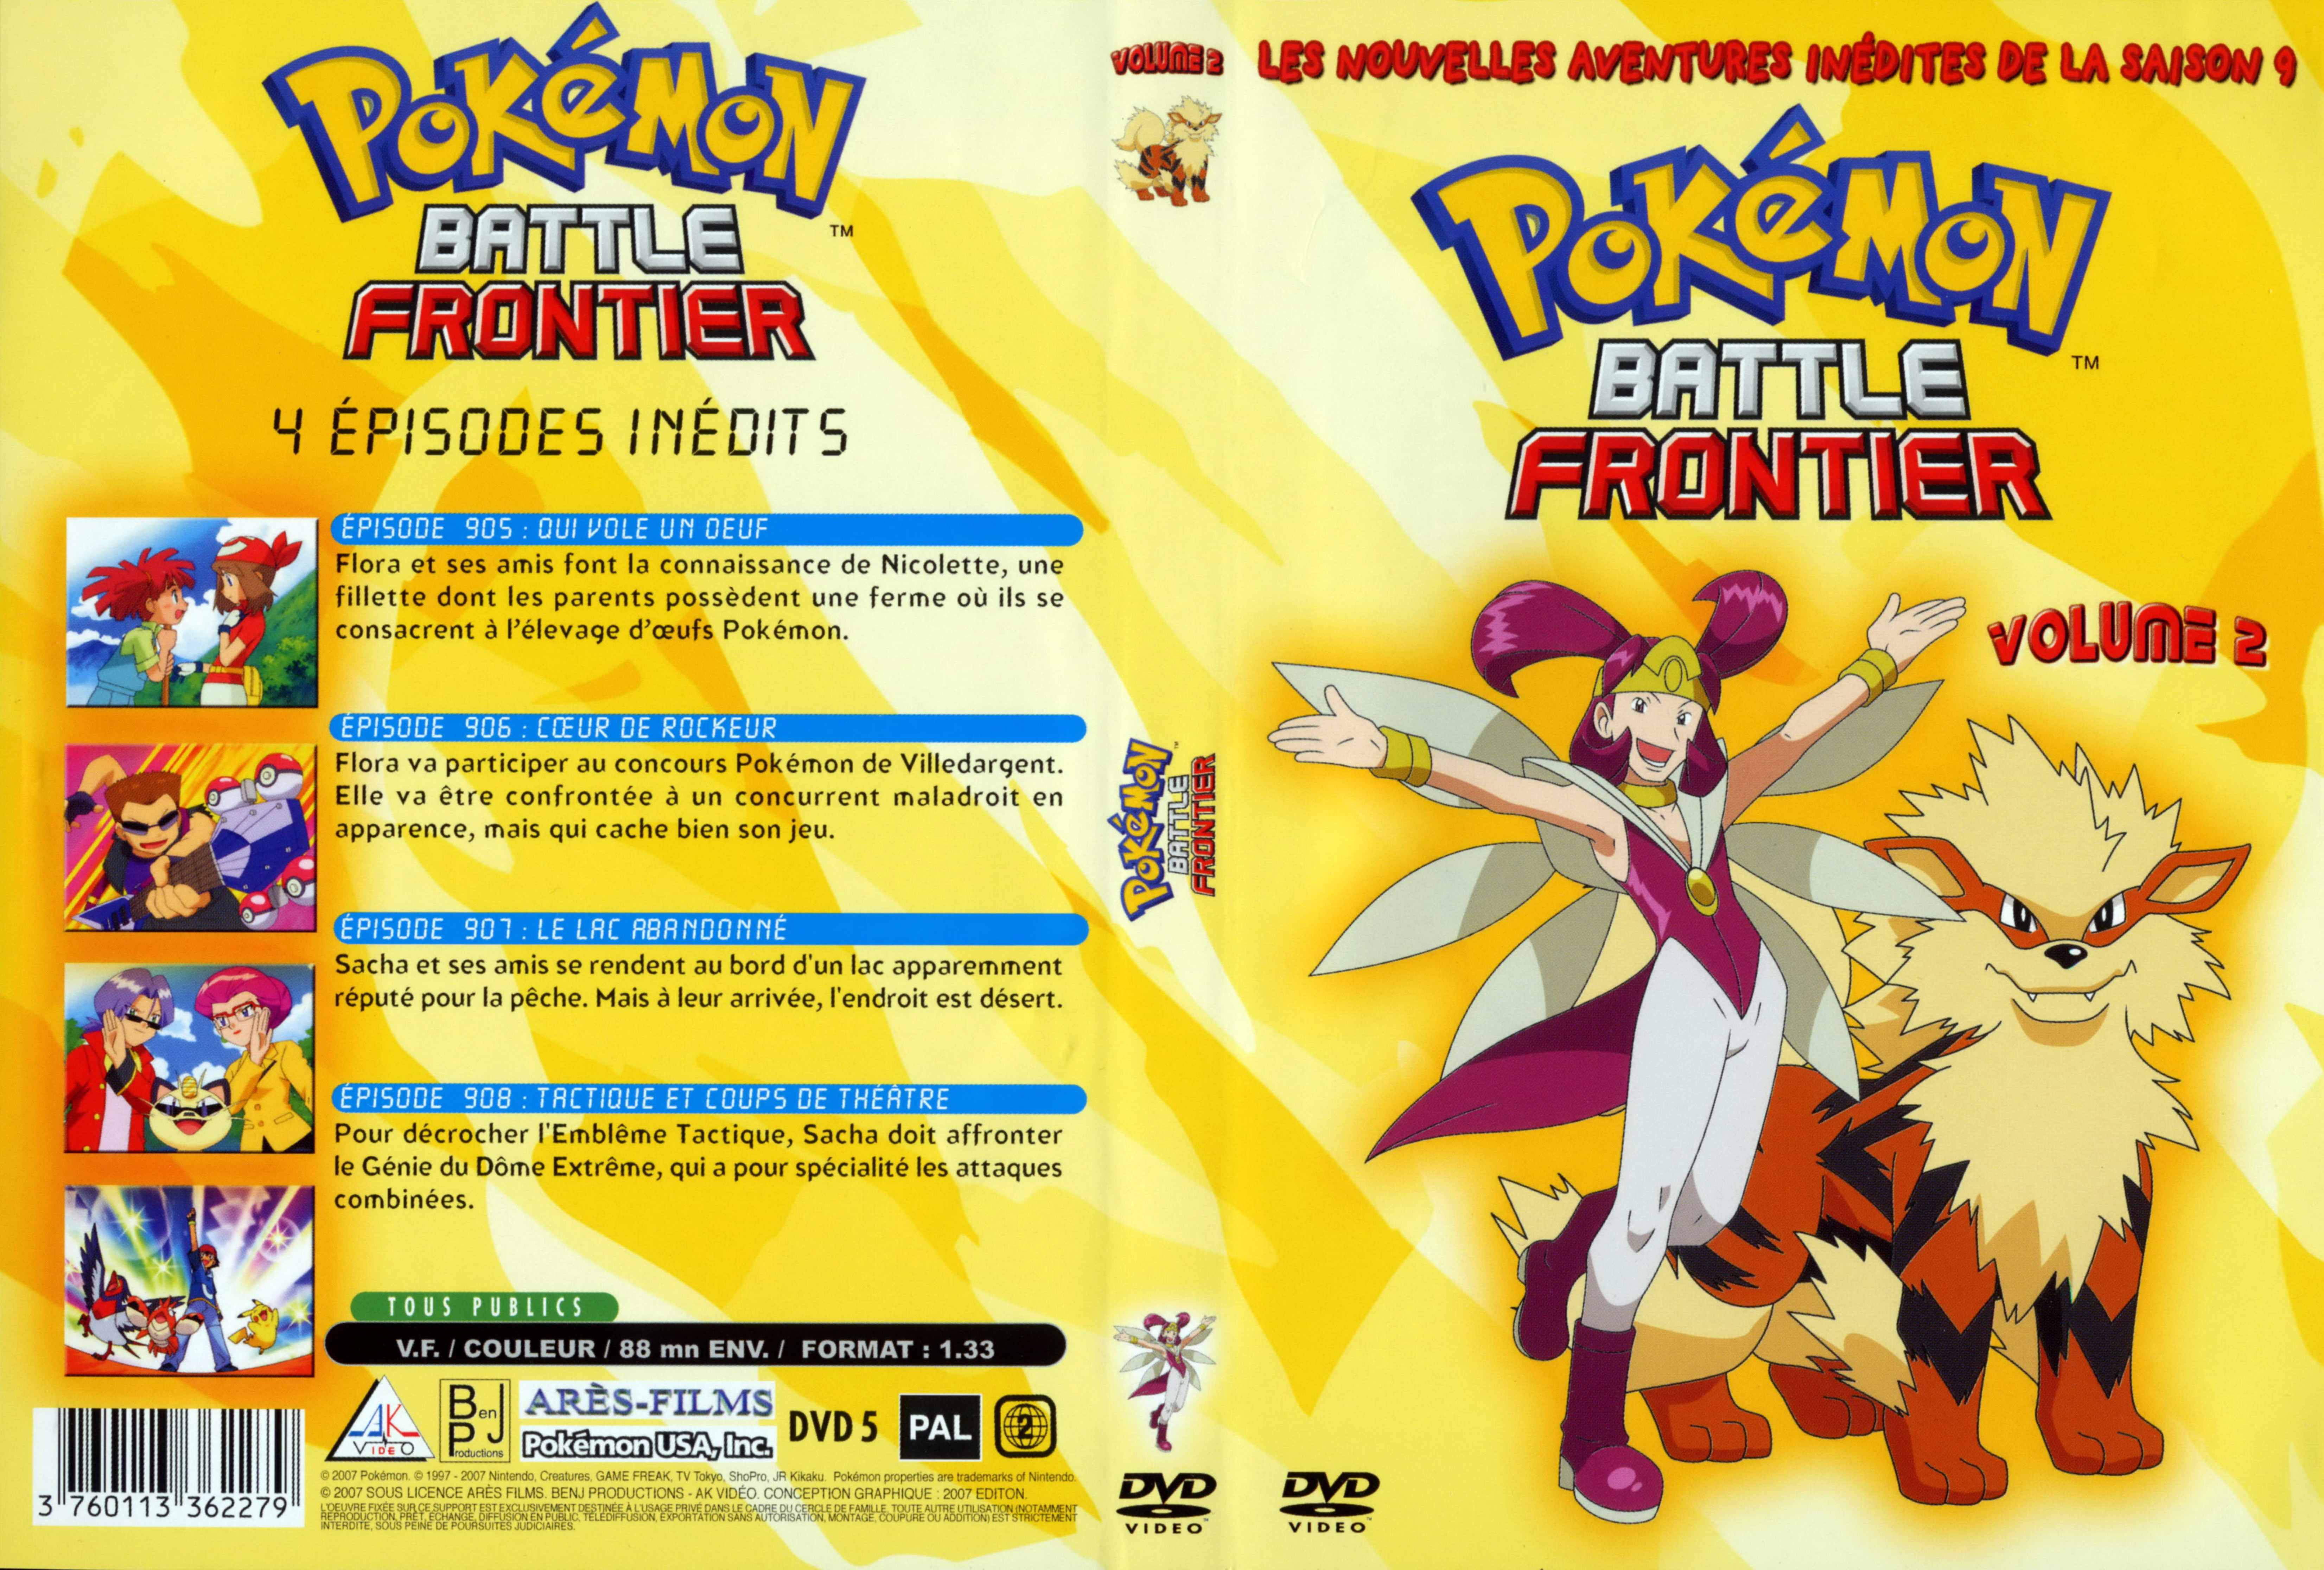 Jaquette DVD Pokemon battle frontier Saison 09 DVD 2